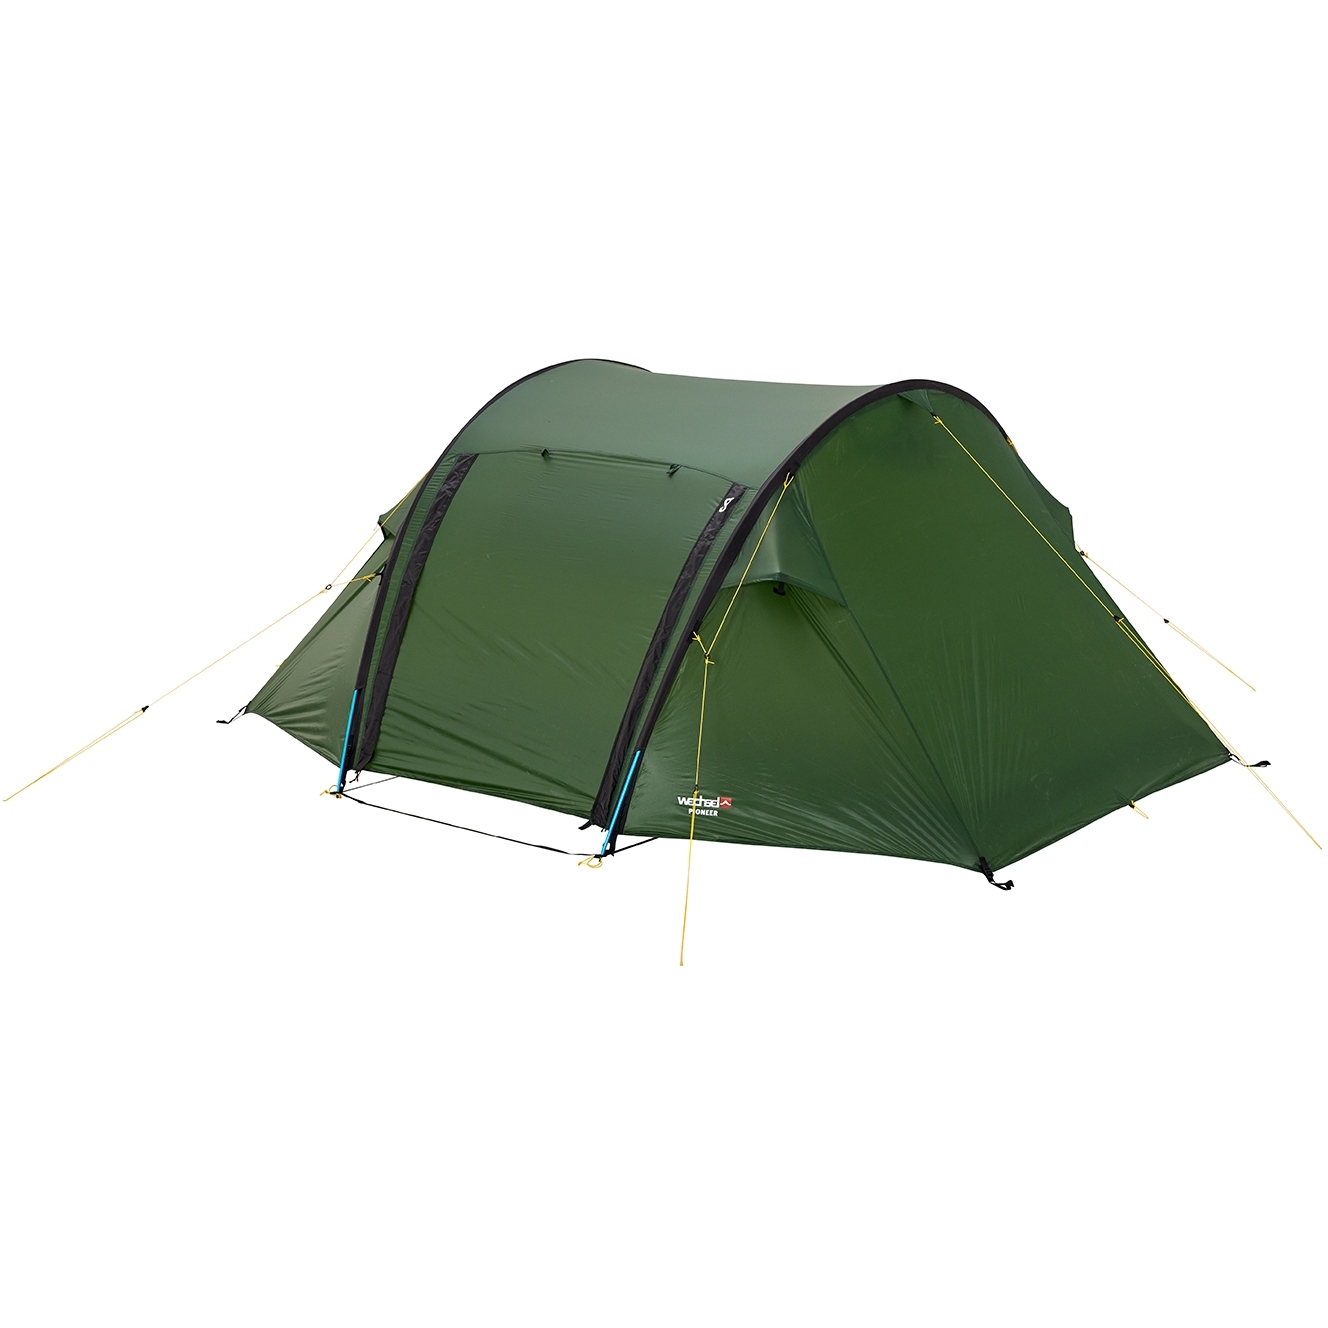 Productfoto van Wechsel Pioneer Tent - groen